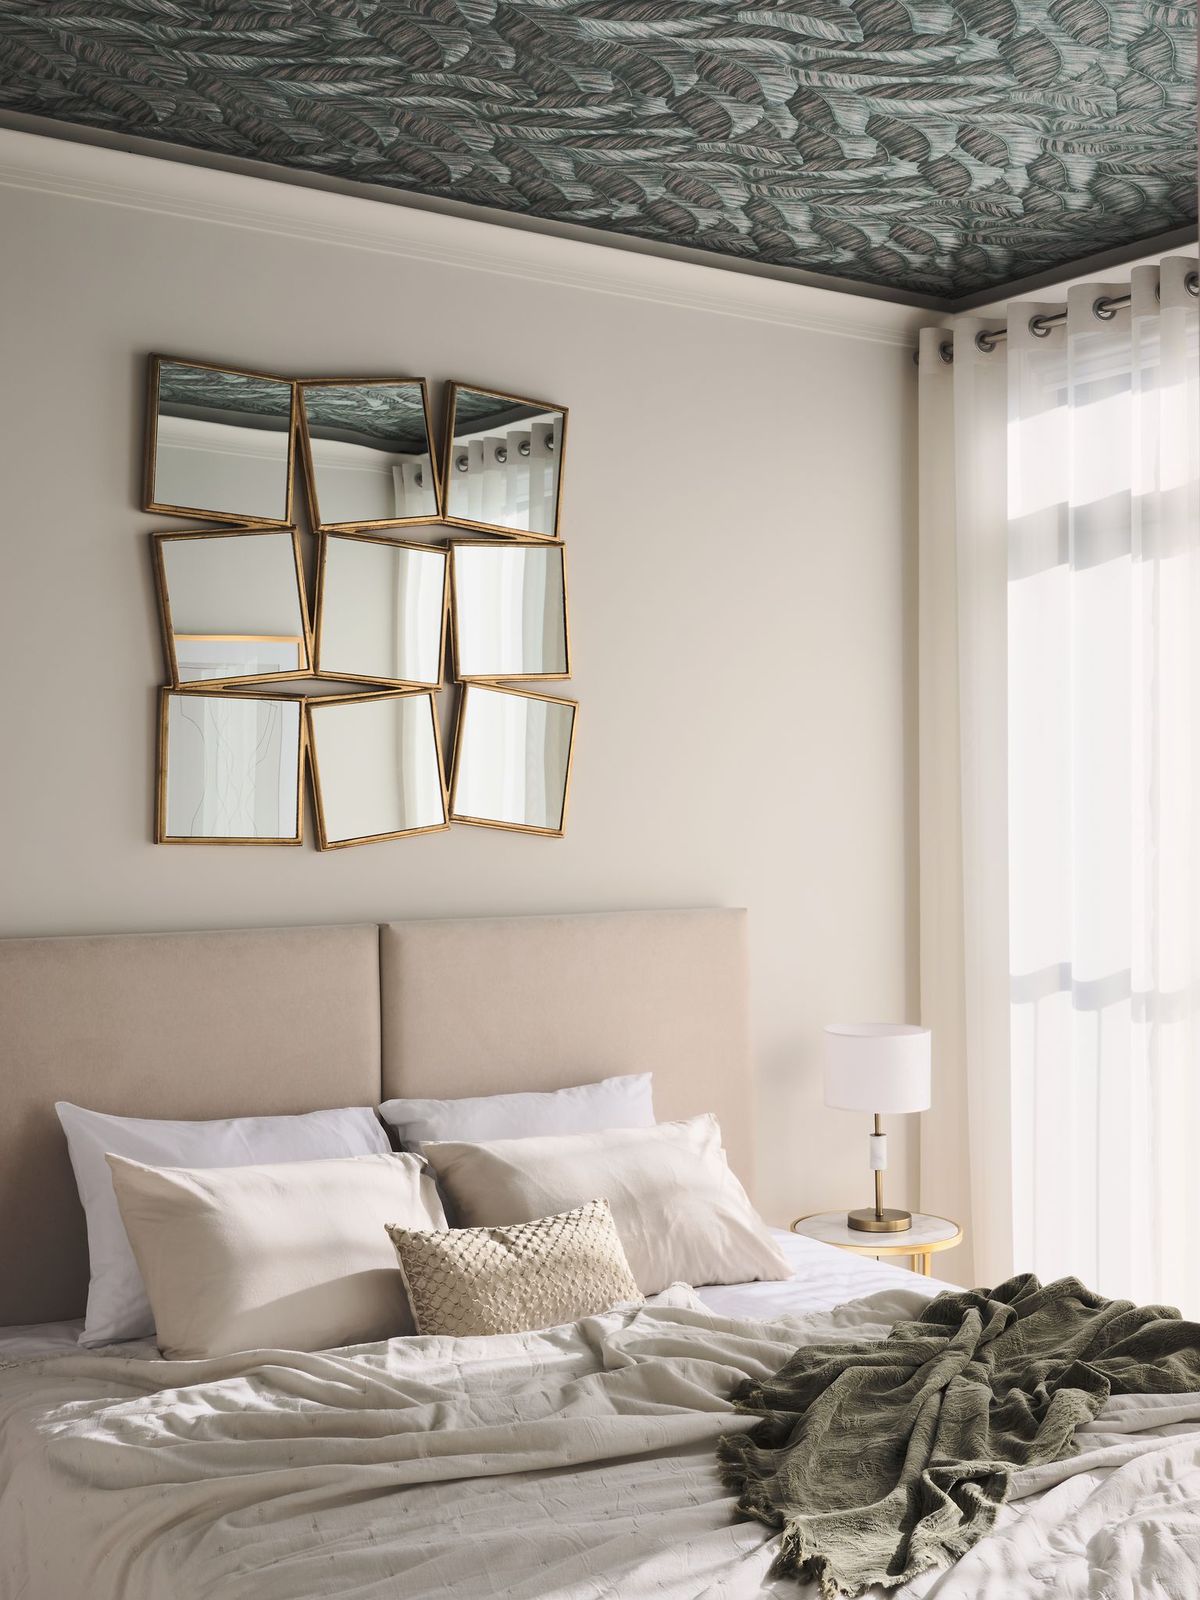 Không gian phòng ngủ sử dụng tone pastel dịu nhẹ cho nền tường và nội thất, kết hợp điểm nhấn là giấy dán tường tương phản trên trần nhà. Thêm vào một tấm gương lớn được kết hợp từ 9 tấm gương nhỏ hình vuông tôn thêm vẻ đẹp hiện đại.